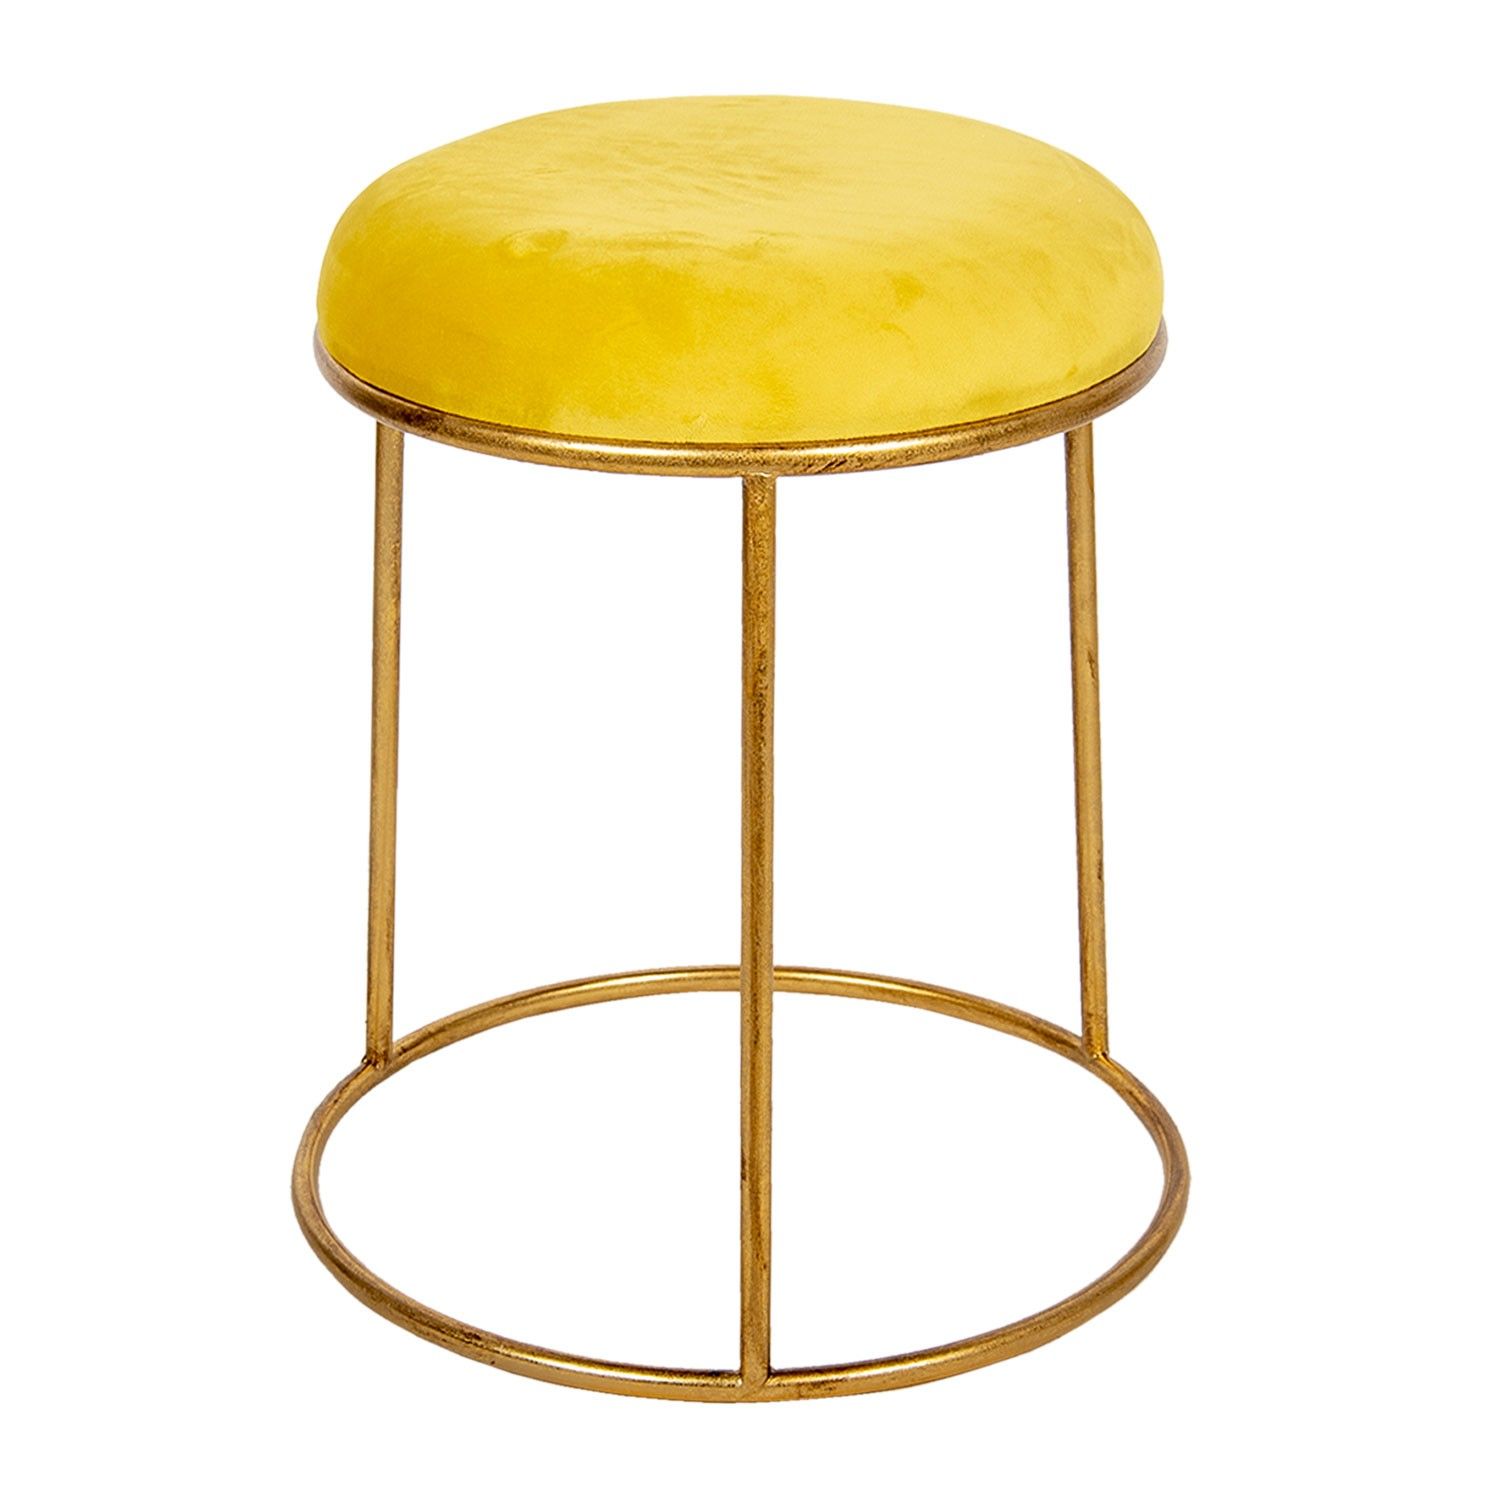 Zlatá kovová stolička se žlutým sametovým podsedákem - Ø 42*48 cm Clayre & Eef - LaHome - vintage dekorace